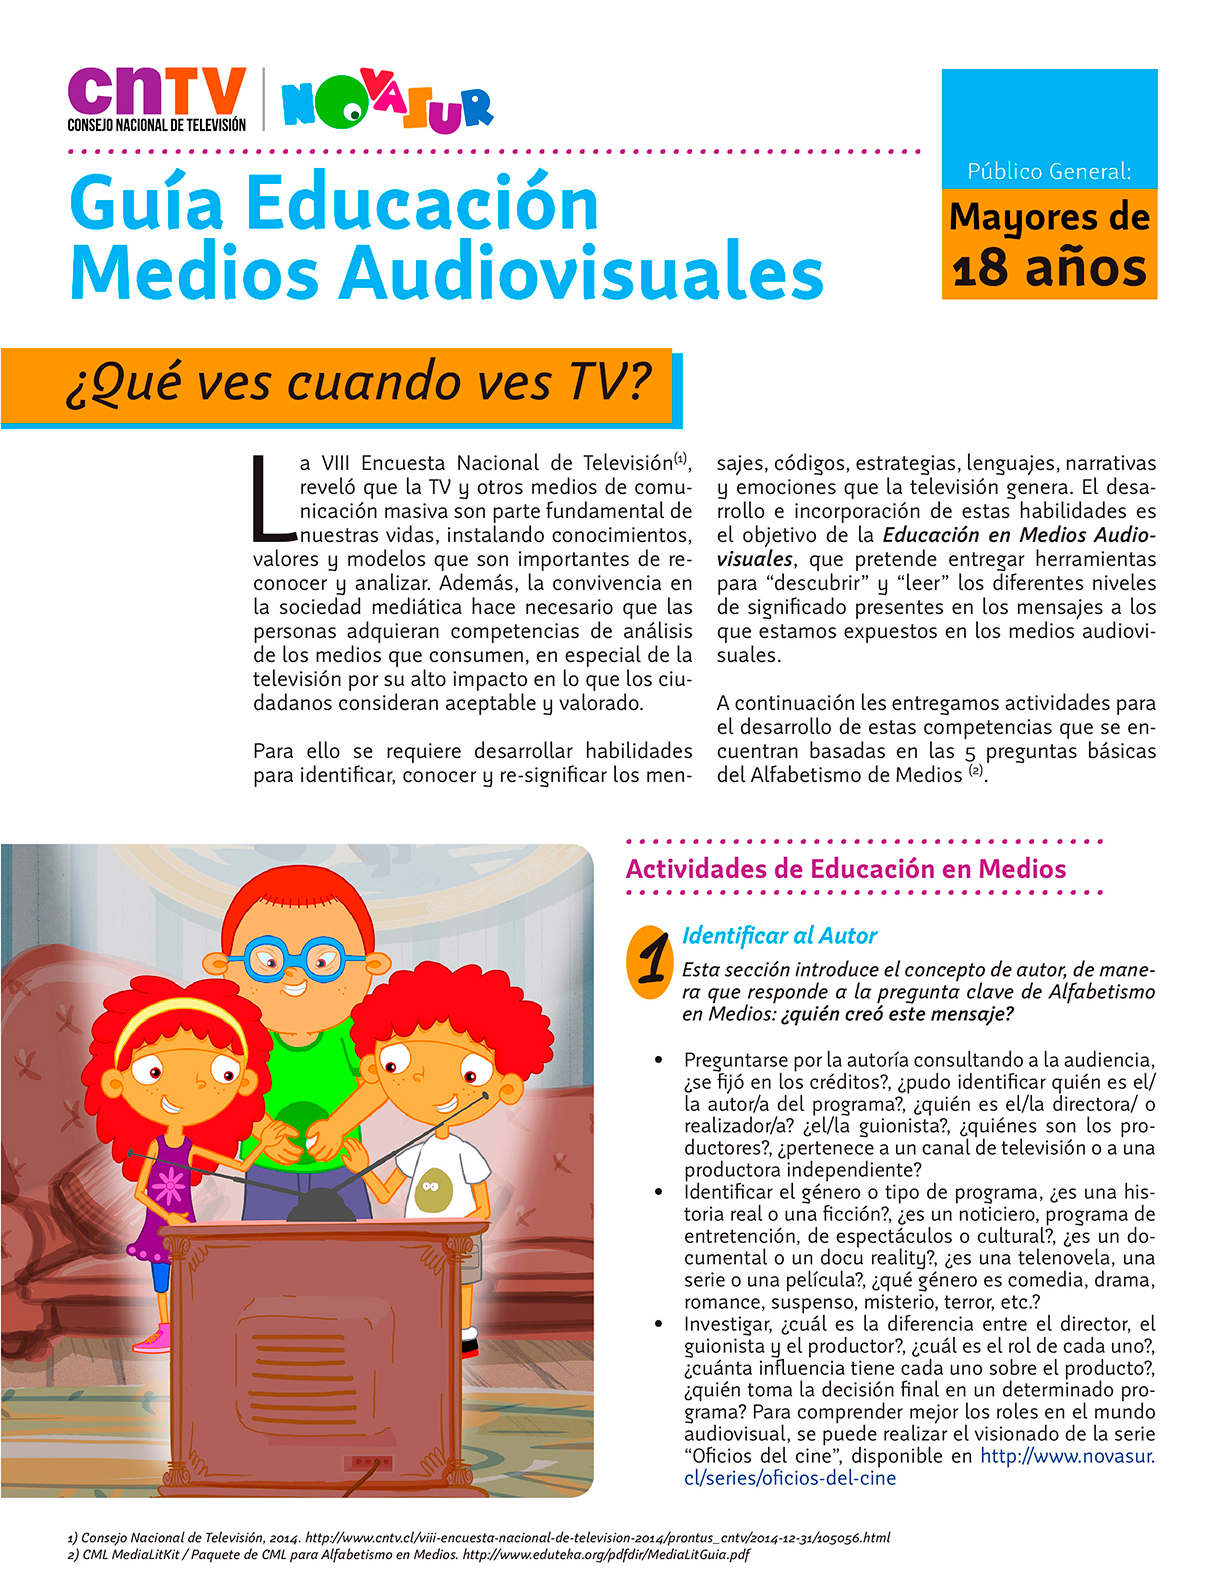 Guía Educación en Medios Audiovisuales para público general mayor de 18 años